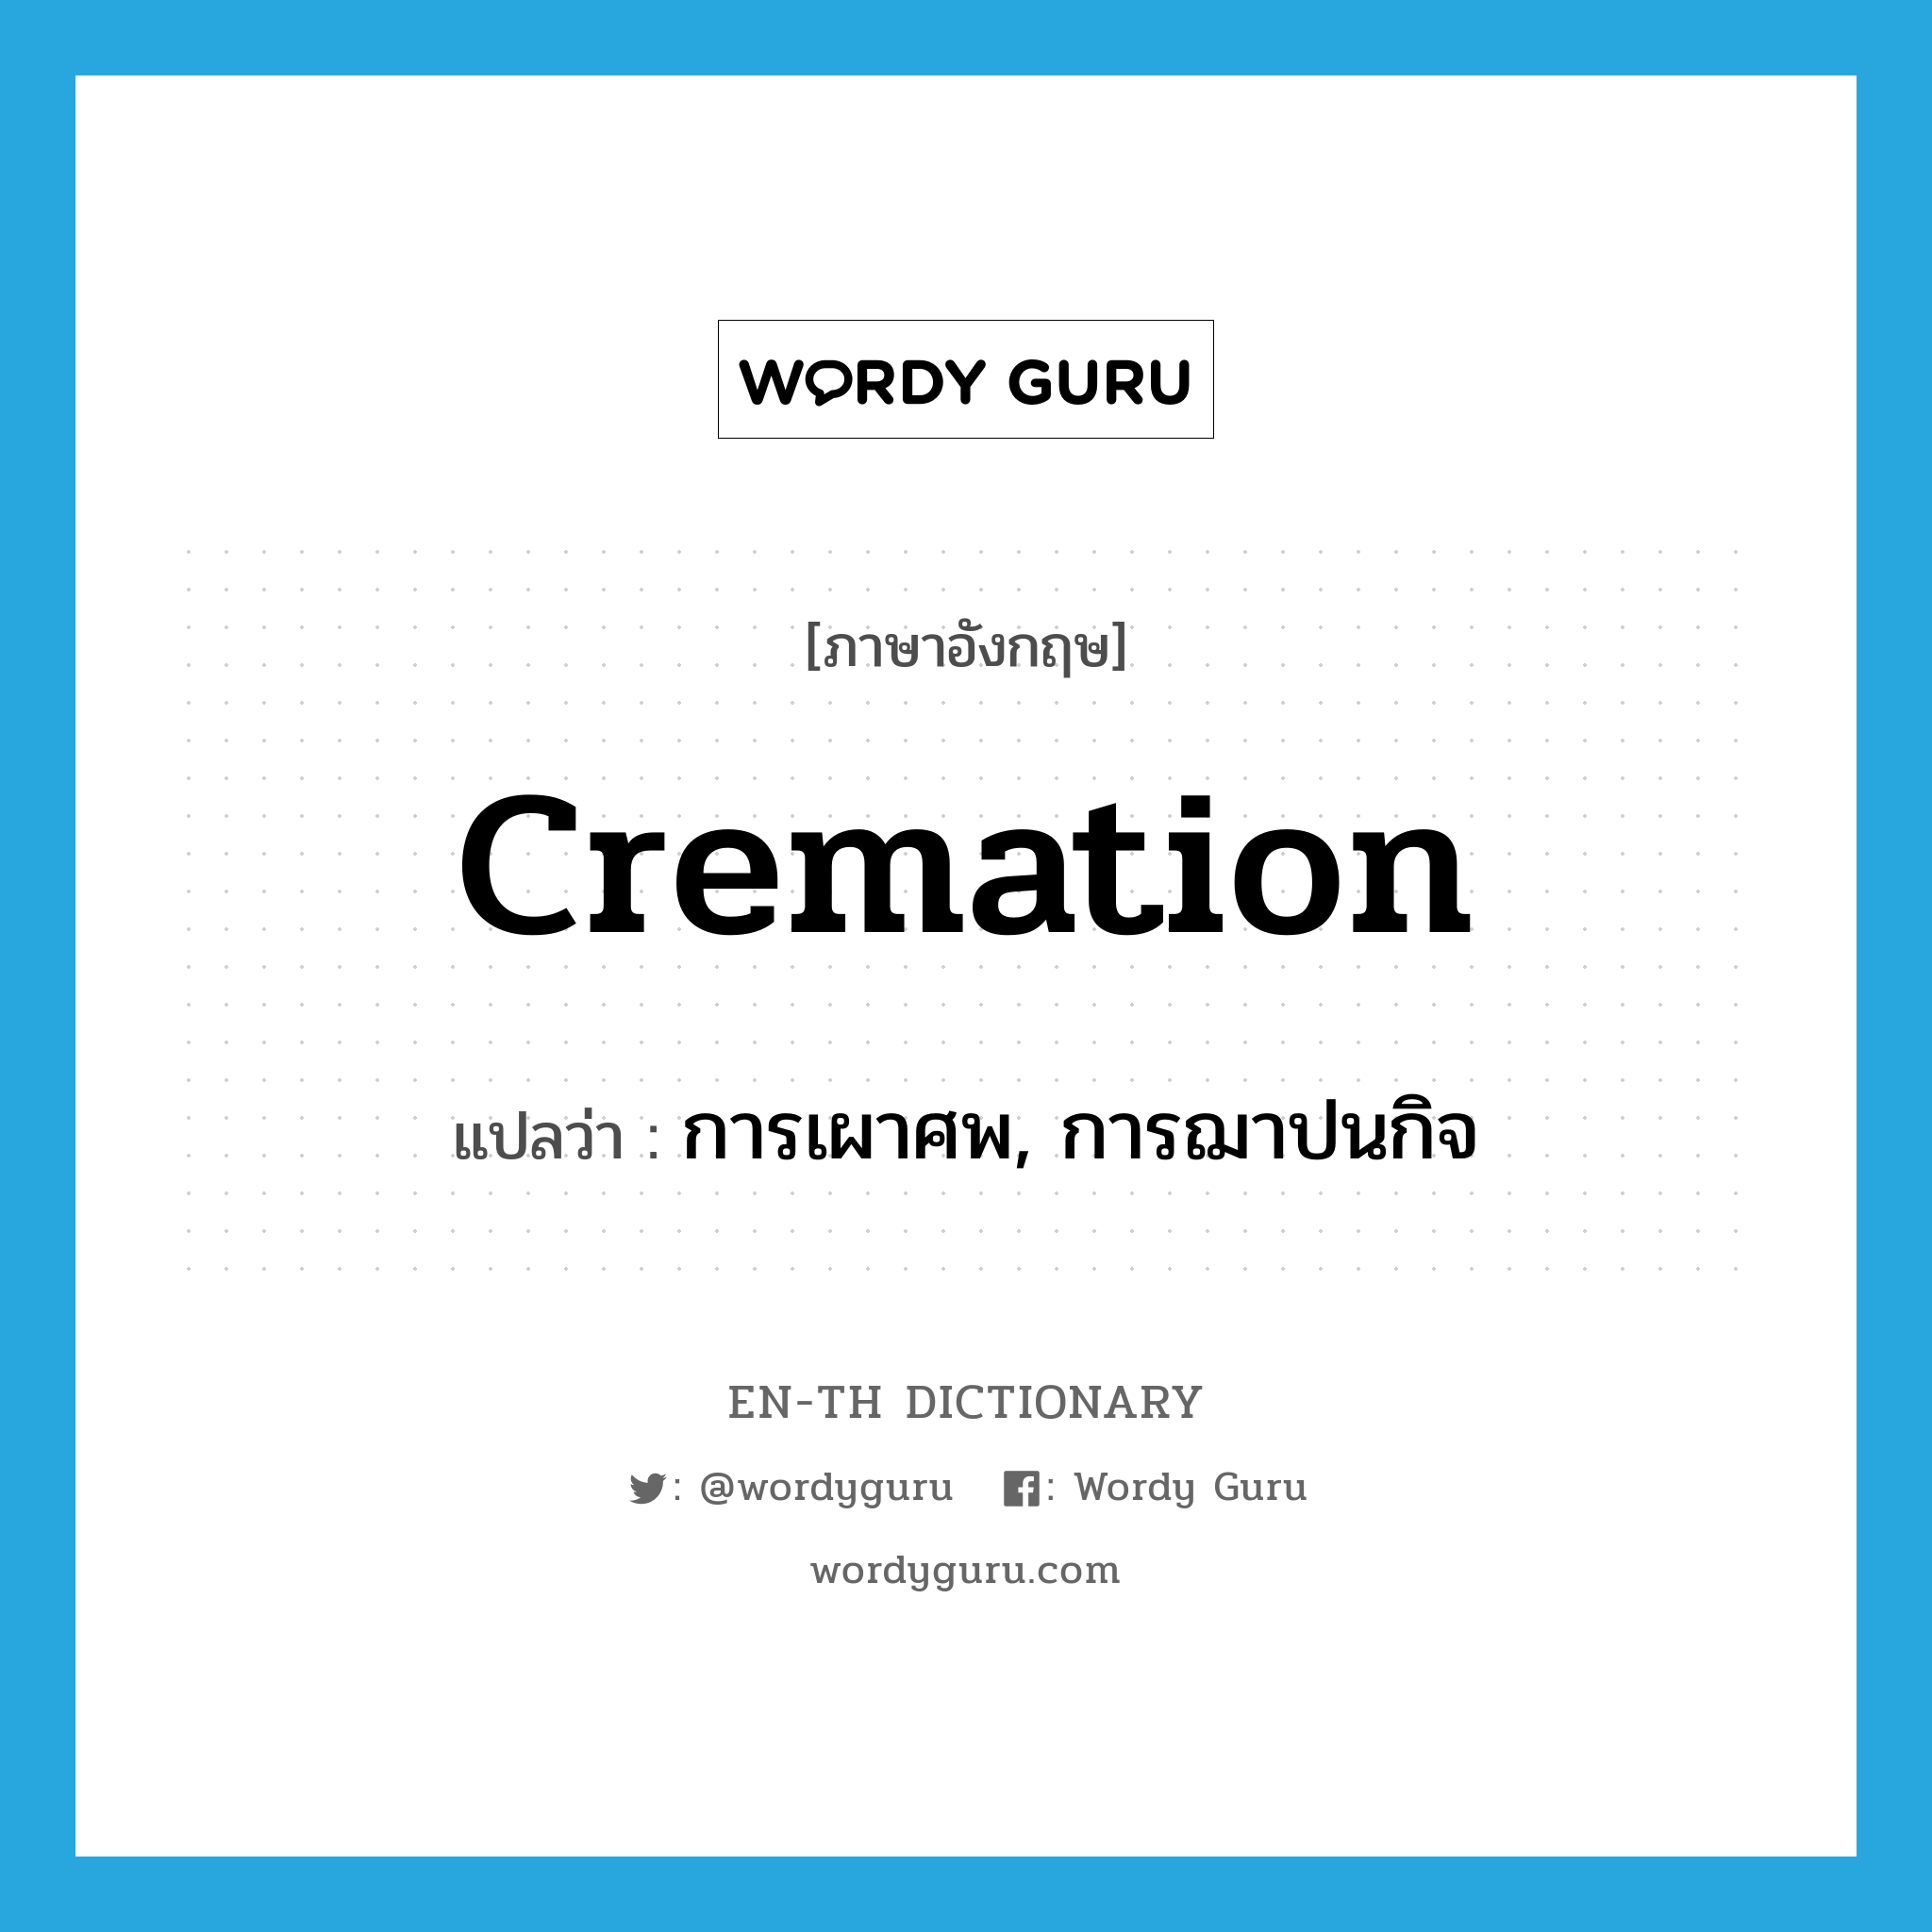 การเผาศพ, การฌาปนกิจ ภาษาอังกฤษ?, คำศัพท์ภาษาอังกฤษ การเผาศพ, การฌาปนกิจ แปลว่า cremation ประเภท N หมวด N